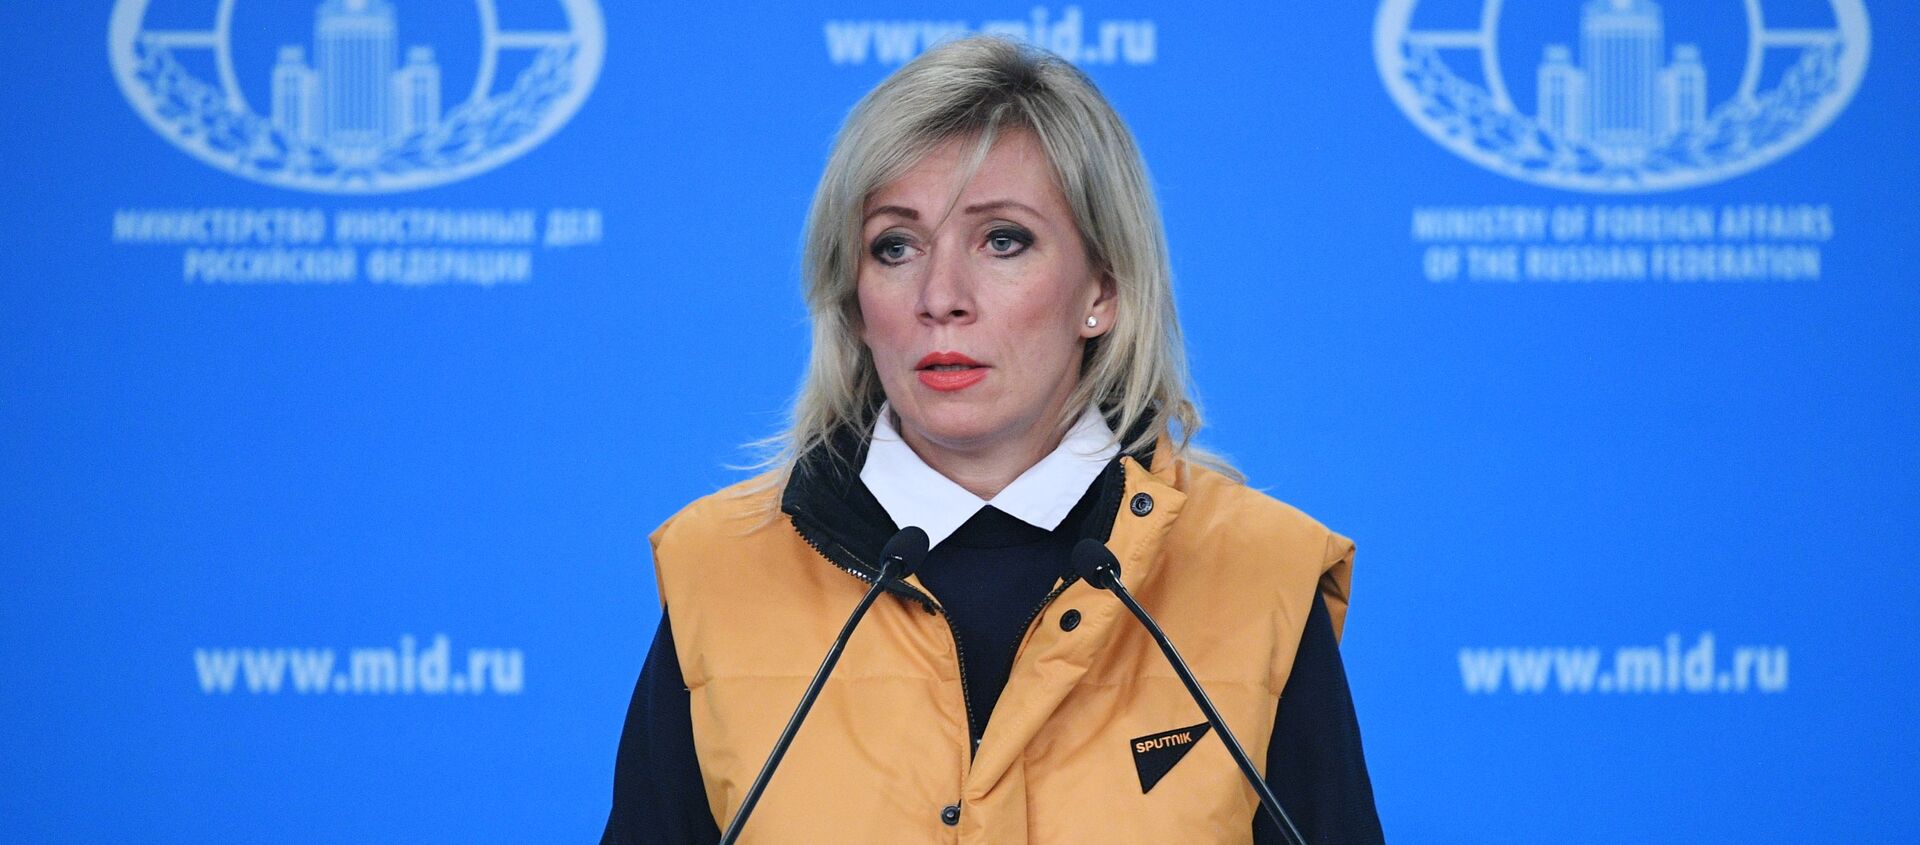 Официальный представитель министерства иностранных дел России Мария Захарова во время брифинга в Москве - Sputnik Латвия, 1920, 31.12.2019